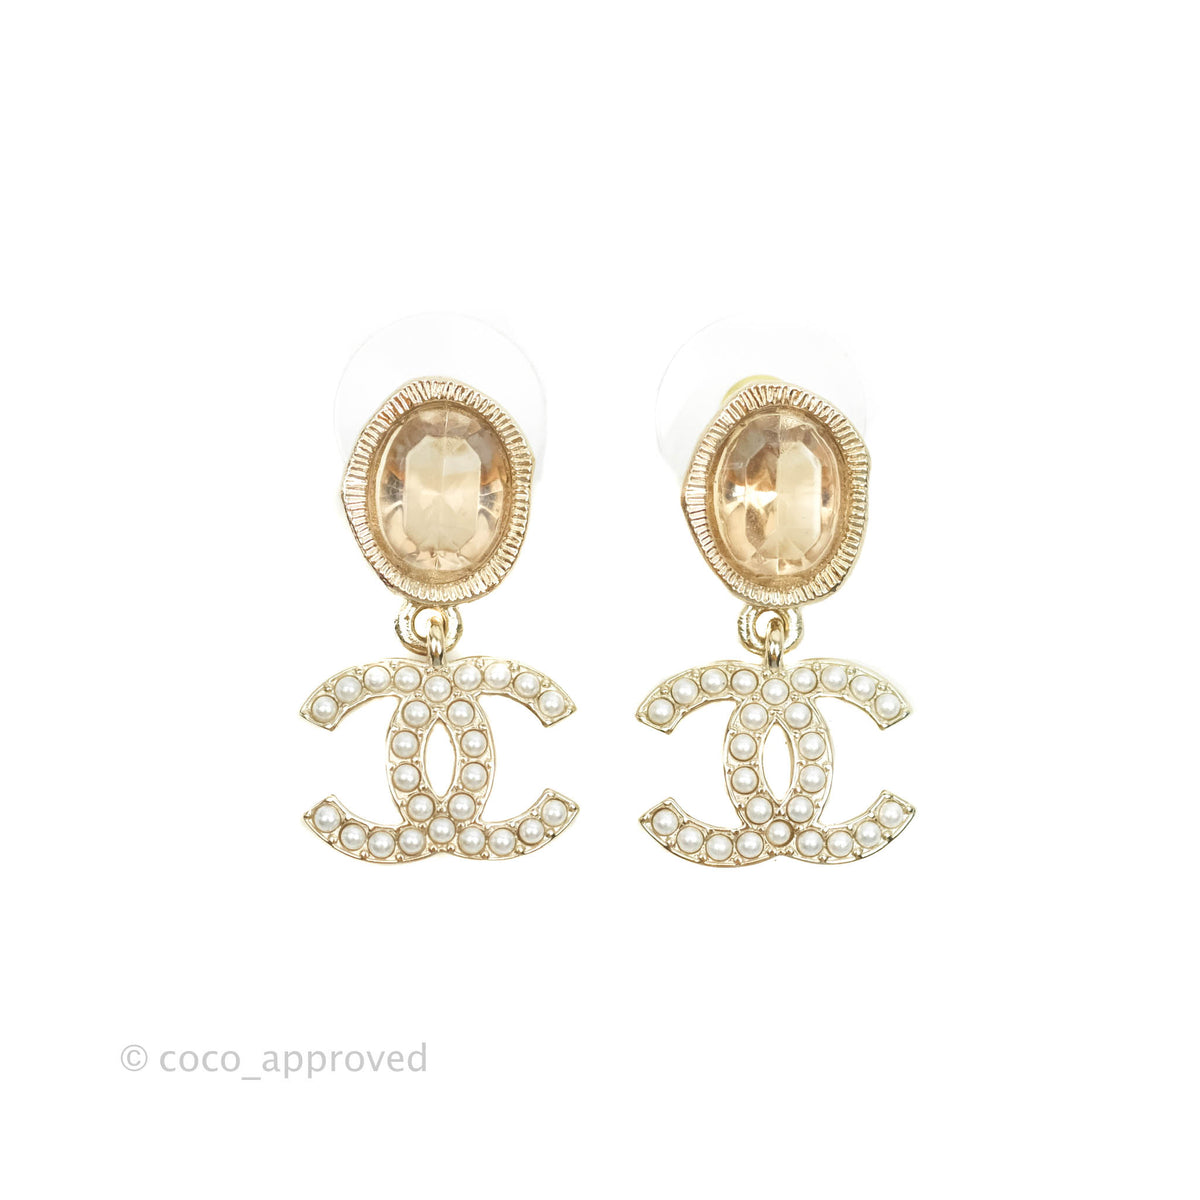 Chanel cc chain earrings - Gem